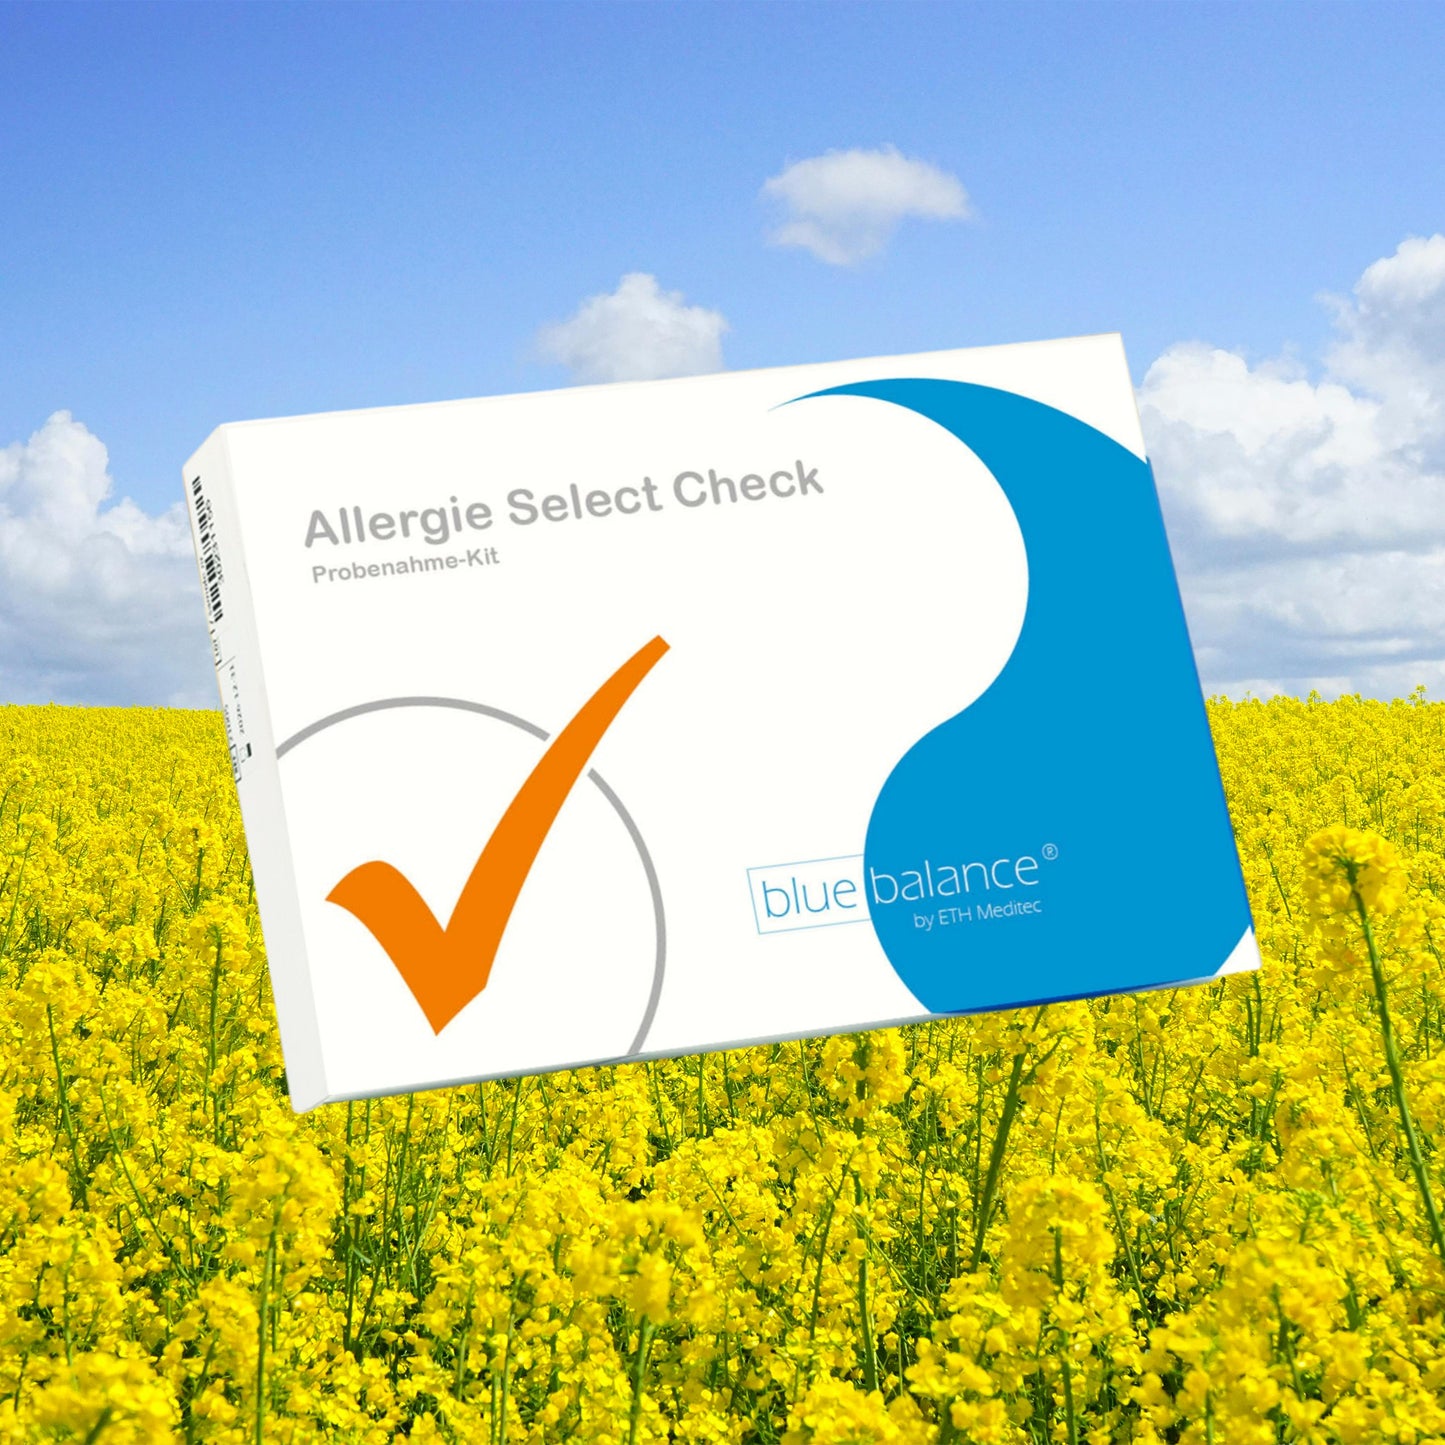 Entdecken Sie Ihre Allergien mit dem „Allergietest Select“ von blue balance®. Erhalten Sie eine umfassende Blutanalyse basierend auf neuesten wissenschaftlichen Erkenntnissen. Erfahren Sie mehr über potenzielle Kreuzallergien und detaillierte Informationen zu Ihren Immunreaktionen.